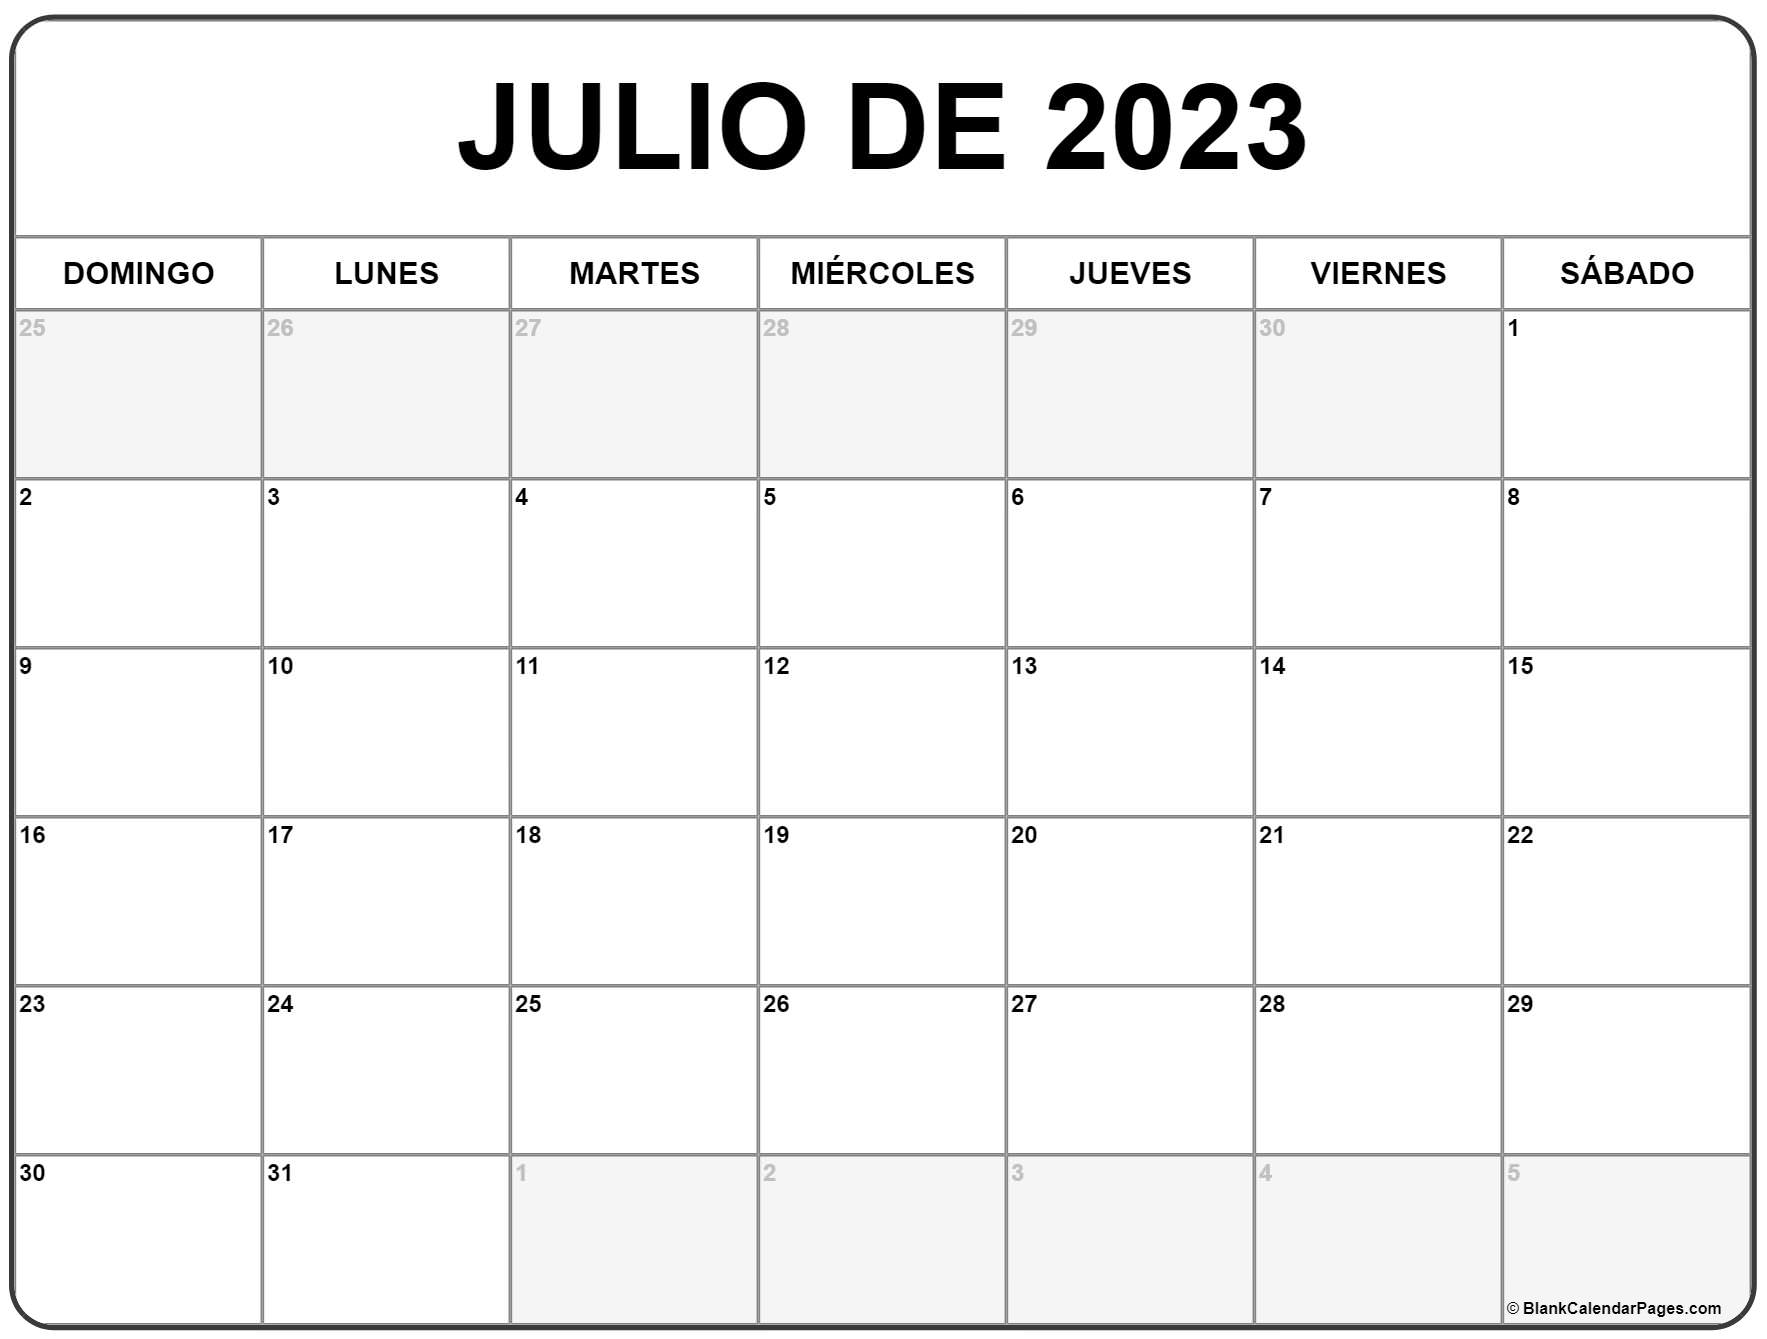 El Calendario De Julio julio de 2023 calendario gratis | Calendario julio